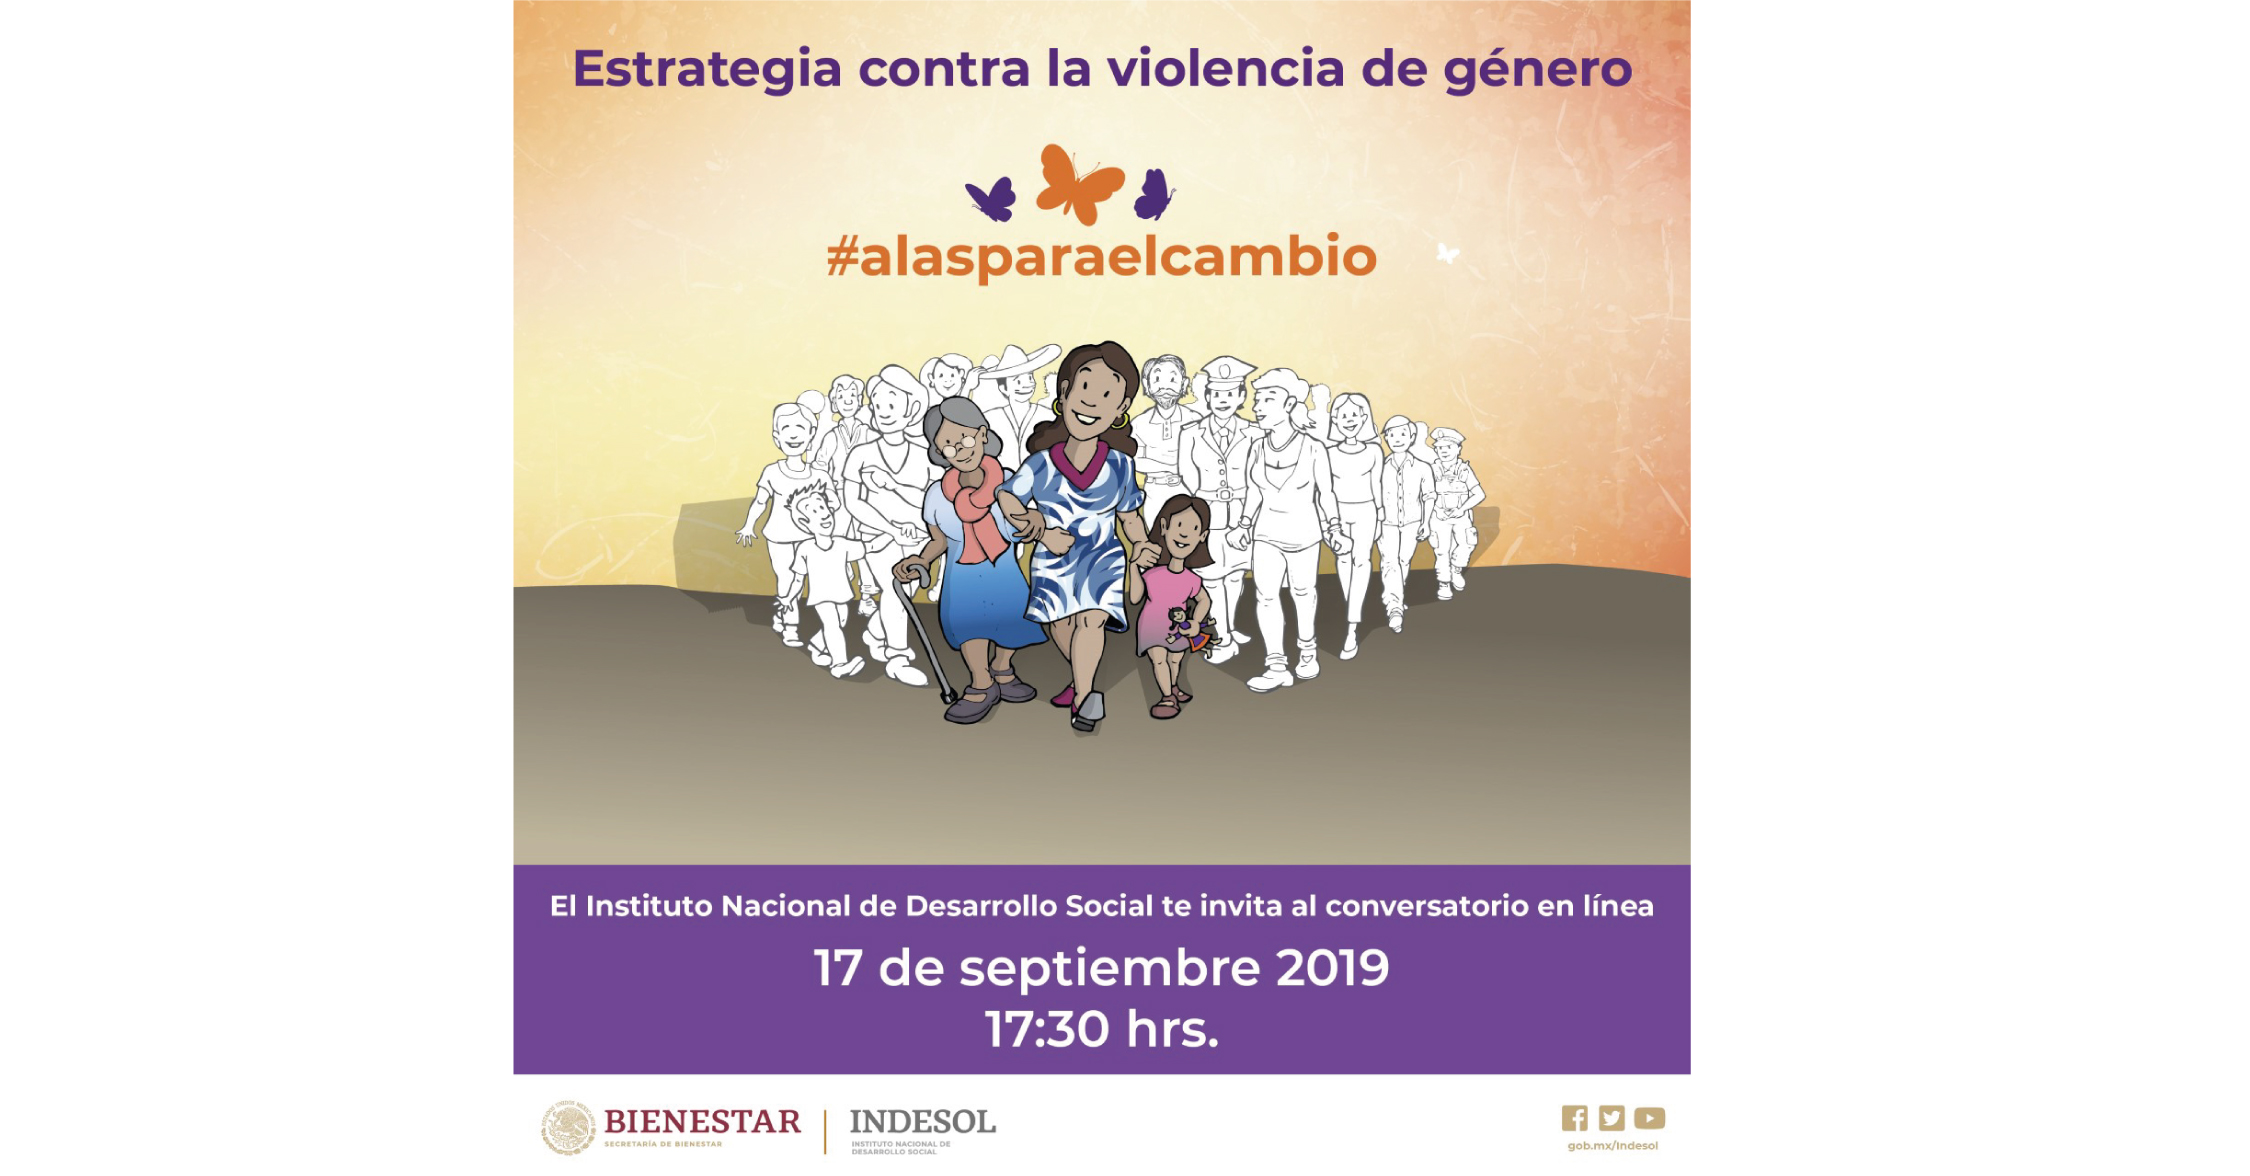 Invitación al conversatorio en línea del Indesol para conocer la estrategia contra la violencia de género